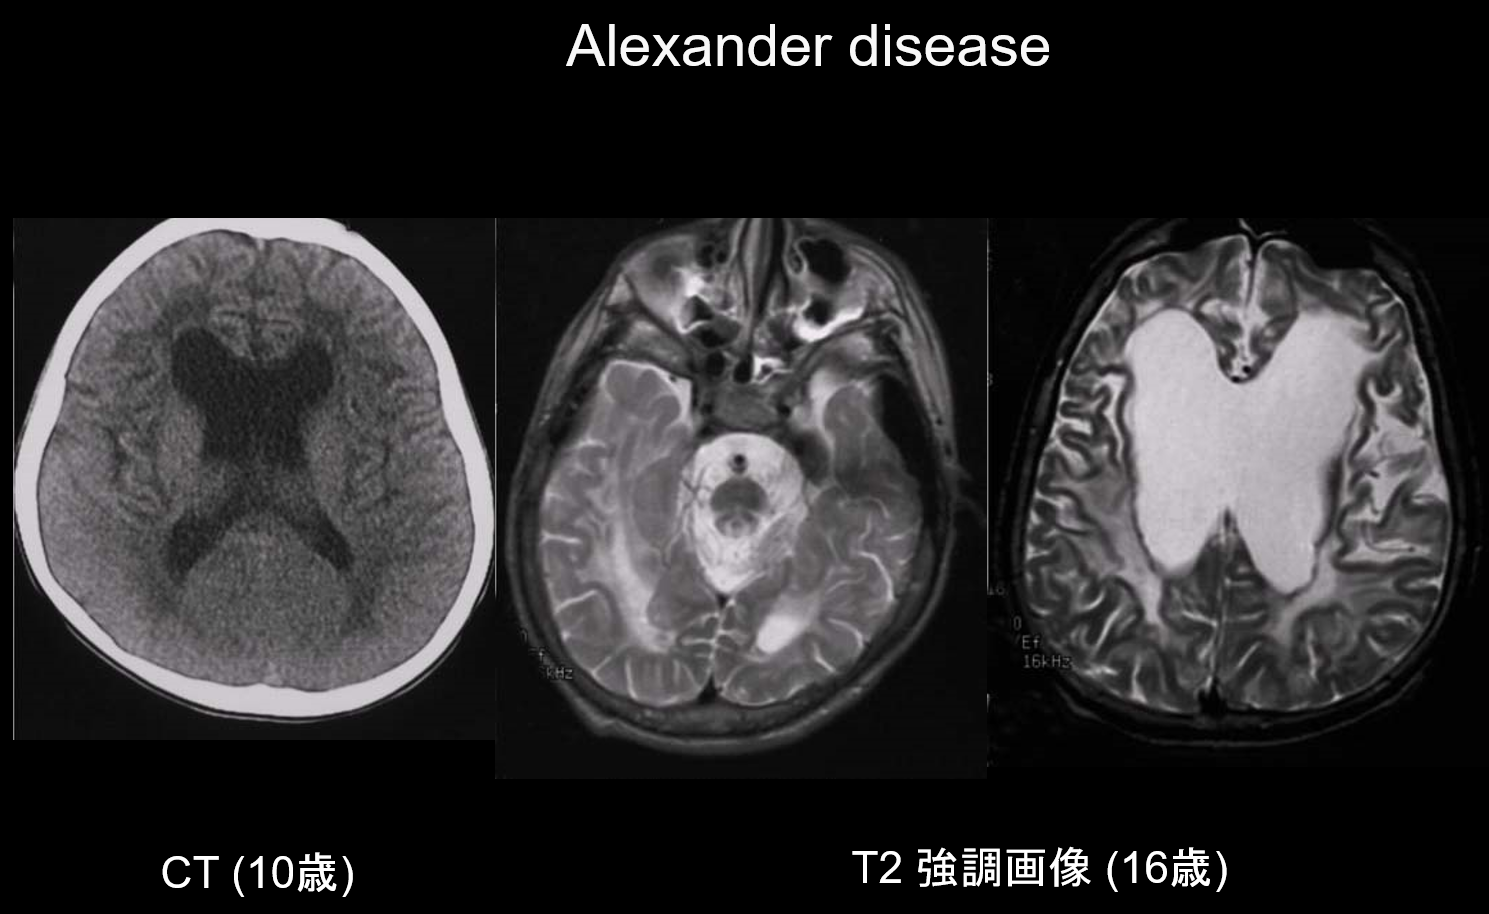 図2. Alexander disease、10歳代男性、発達遅滞、退行、頭囲拡大 (+5SD)、てんかん、痙性。10歳時のCTでは前頭部白質の低信号、側脳室前角の拡大を認める。16歳時のT2強調画像では前頭優位の白質ならびに脳幹の信号異常、萎縮を認める。